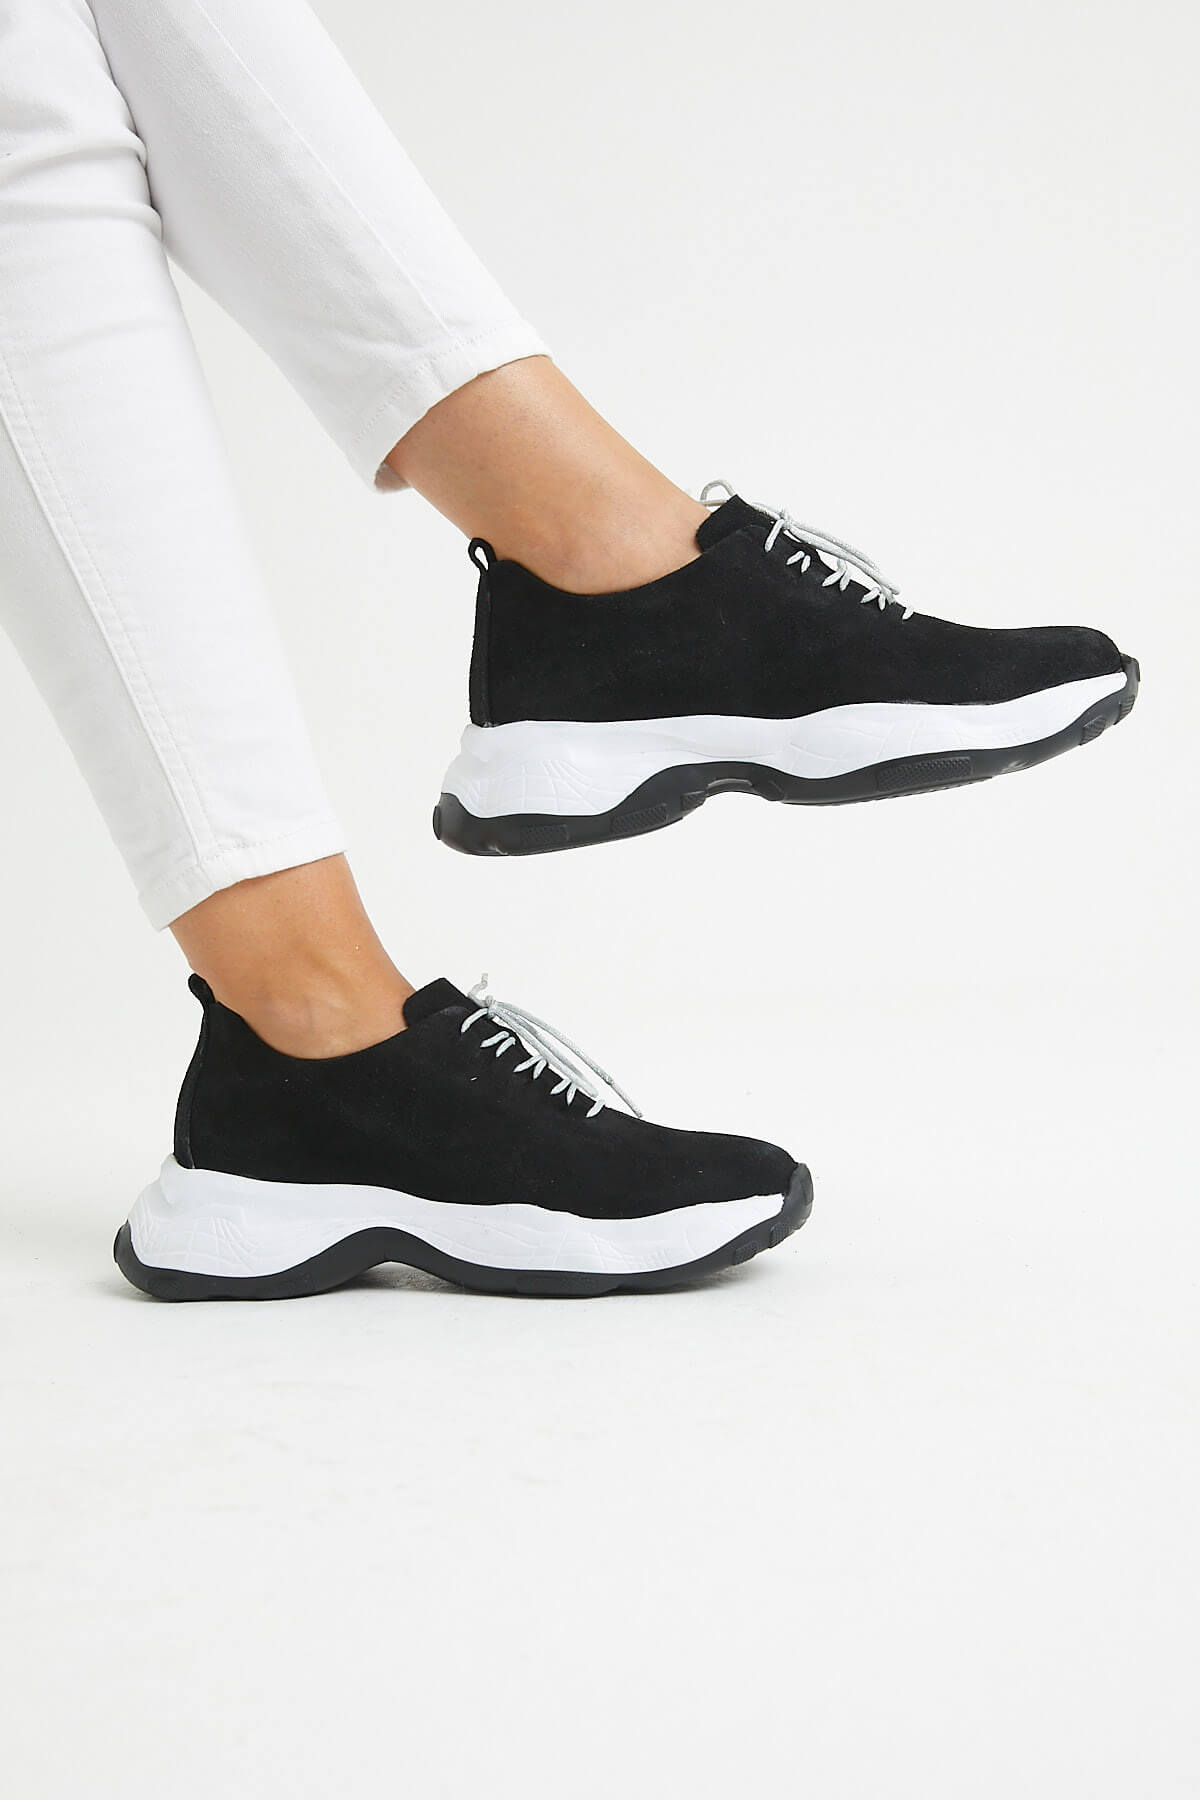 Kadın Deri Sneakers Siyah 2014201Y - Thumbnail